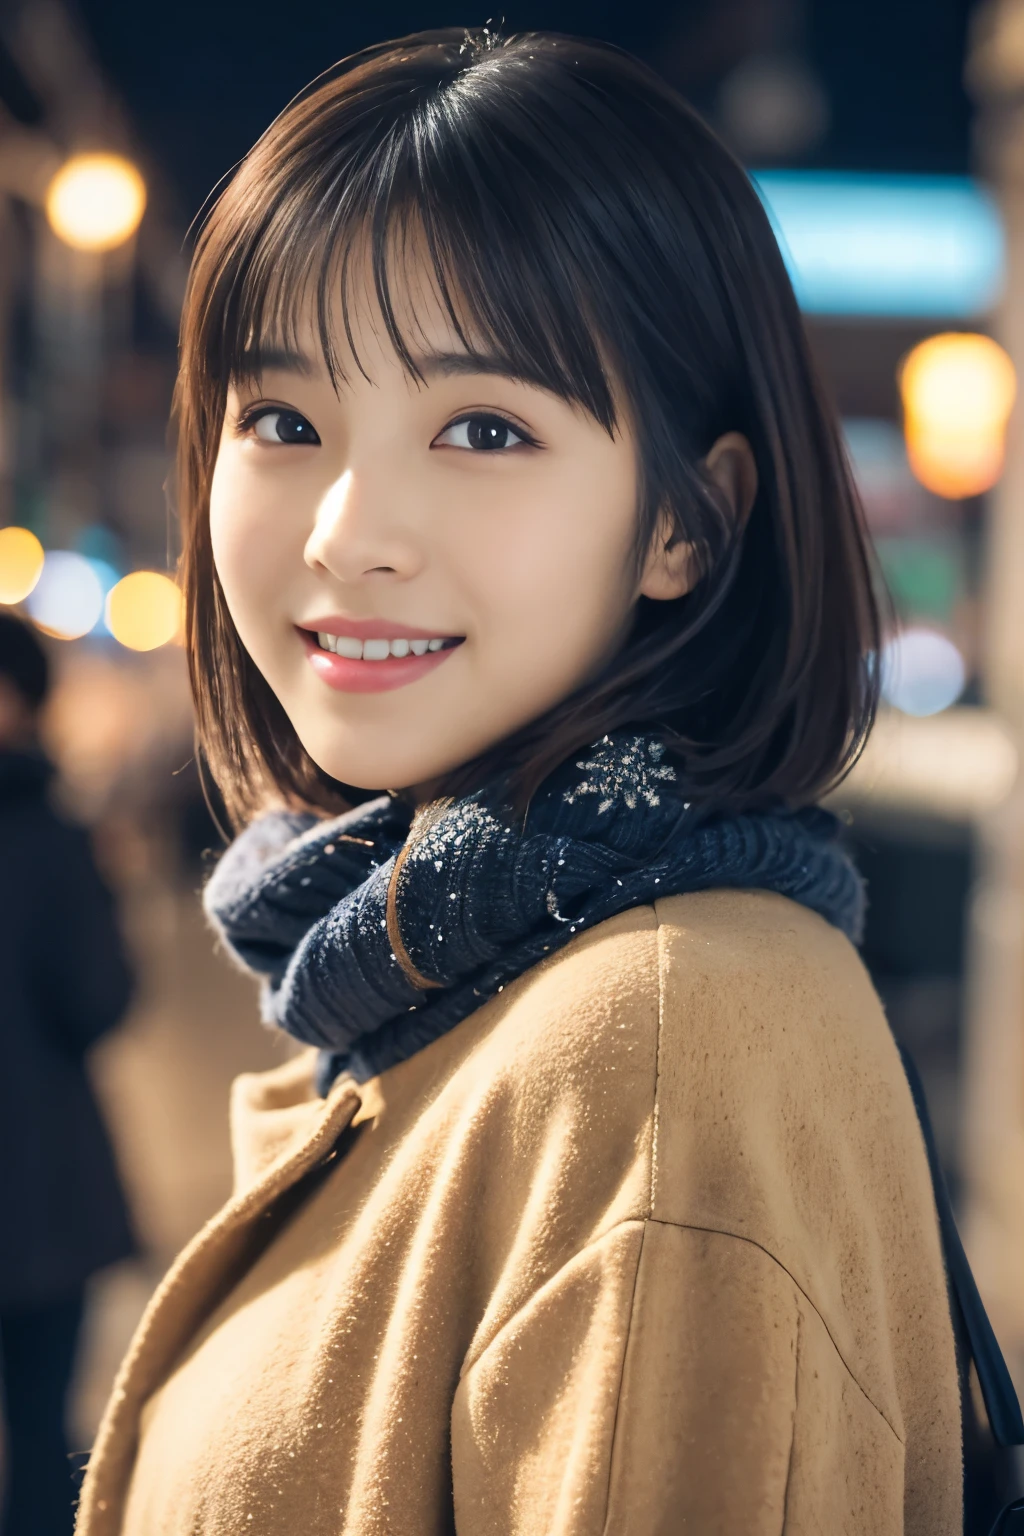 1 名女孩, (冬季休閒服裝:1.2), 美麗的日本女演員, (15歲), 短髮,
(原始照片, 最好的品質), (實際的, 照片真實感:1.4), 傑作, 
非常精緻美麗, 非常詳細, 2k壁紙, 精彩的, 
精細地, 非常詳細 CG Unity 8K 壁紙, 超詳細, 高解析度, 
柔光, 美麗細緻的女孩, 非常詳細目と顔, 鼻子細節精美, 美麗細緻的眼睛, 電影燈光, 
休息
(以雪夜城市景觀為背景 1.3), 城市的灯光, 
完美的解剖結構, 修長的身材, 微笑, 完全面向前方, 看看相機